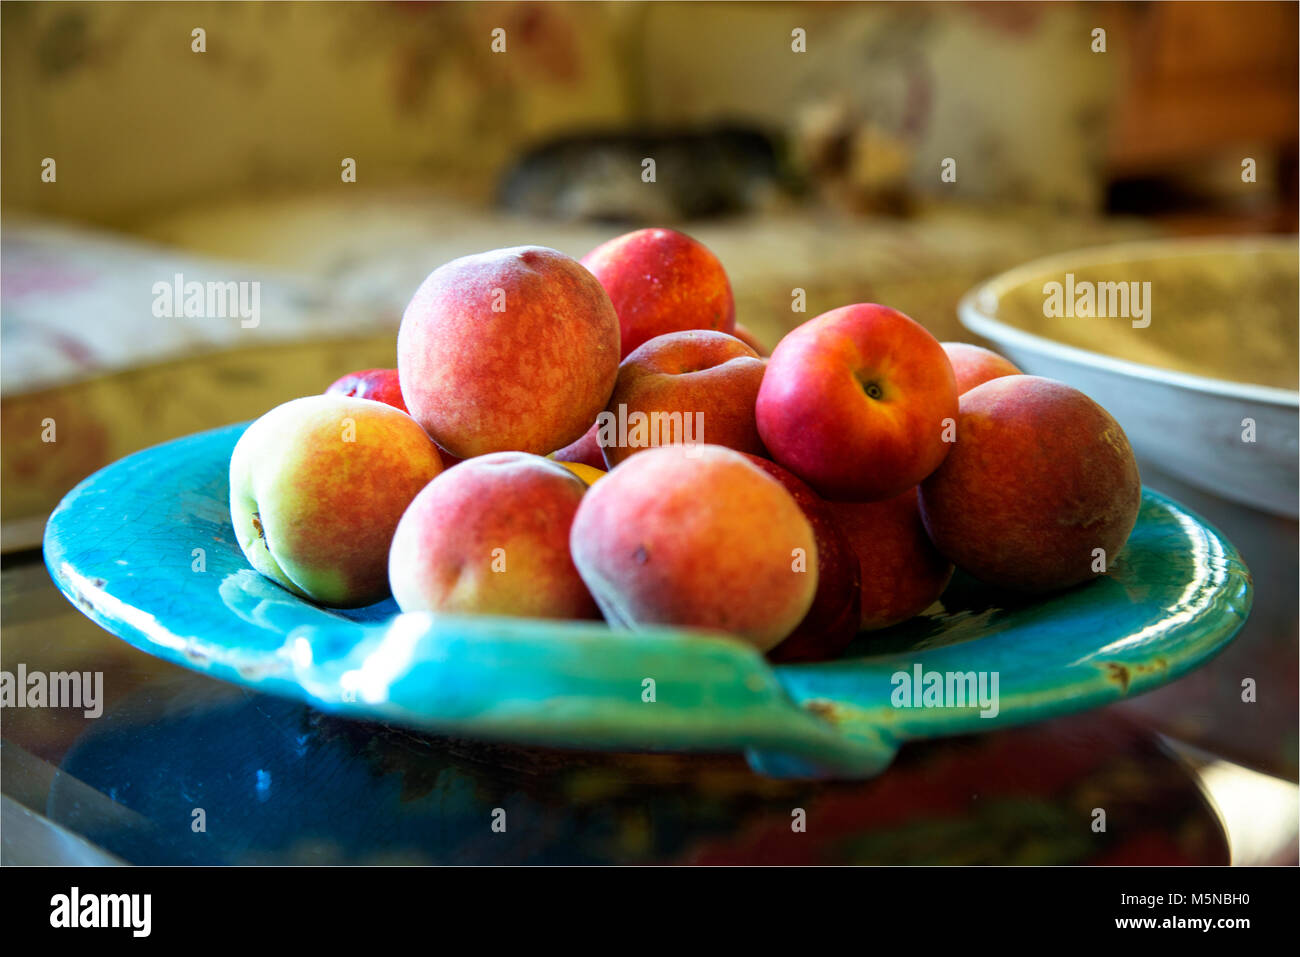 Obst, Pfirsiche, Nektarinen und Zitronen auf einem türkis Platter serviert, perfekt für den Sommer, Patio Dining, Frühling feiern oder Tabelle Einstellungen Stück center Stockfoto